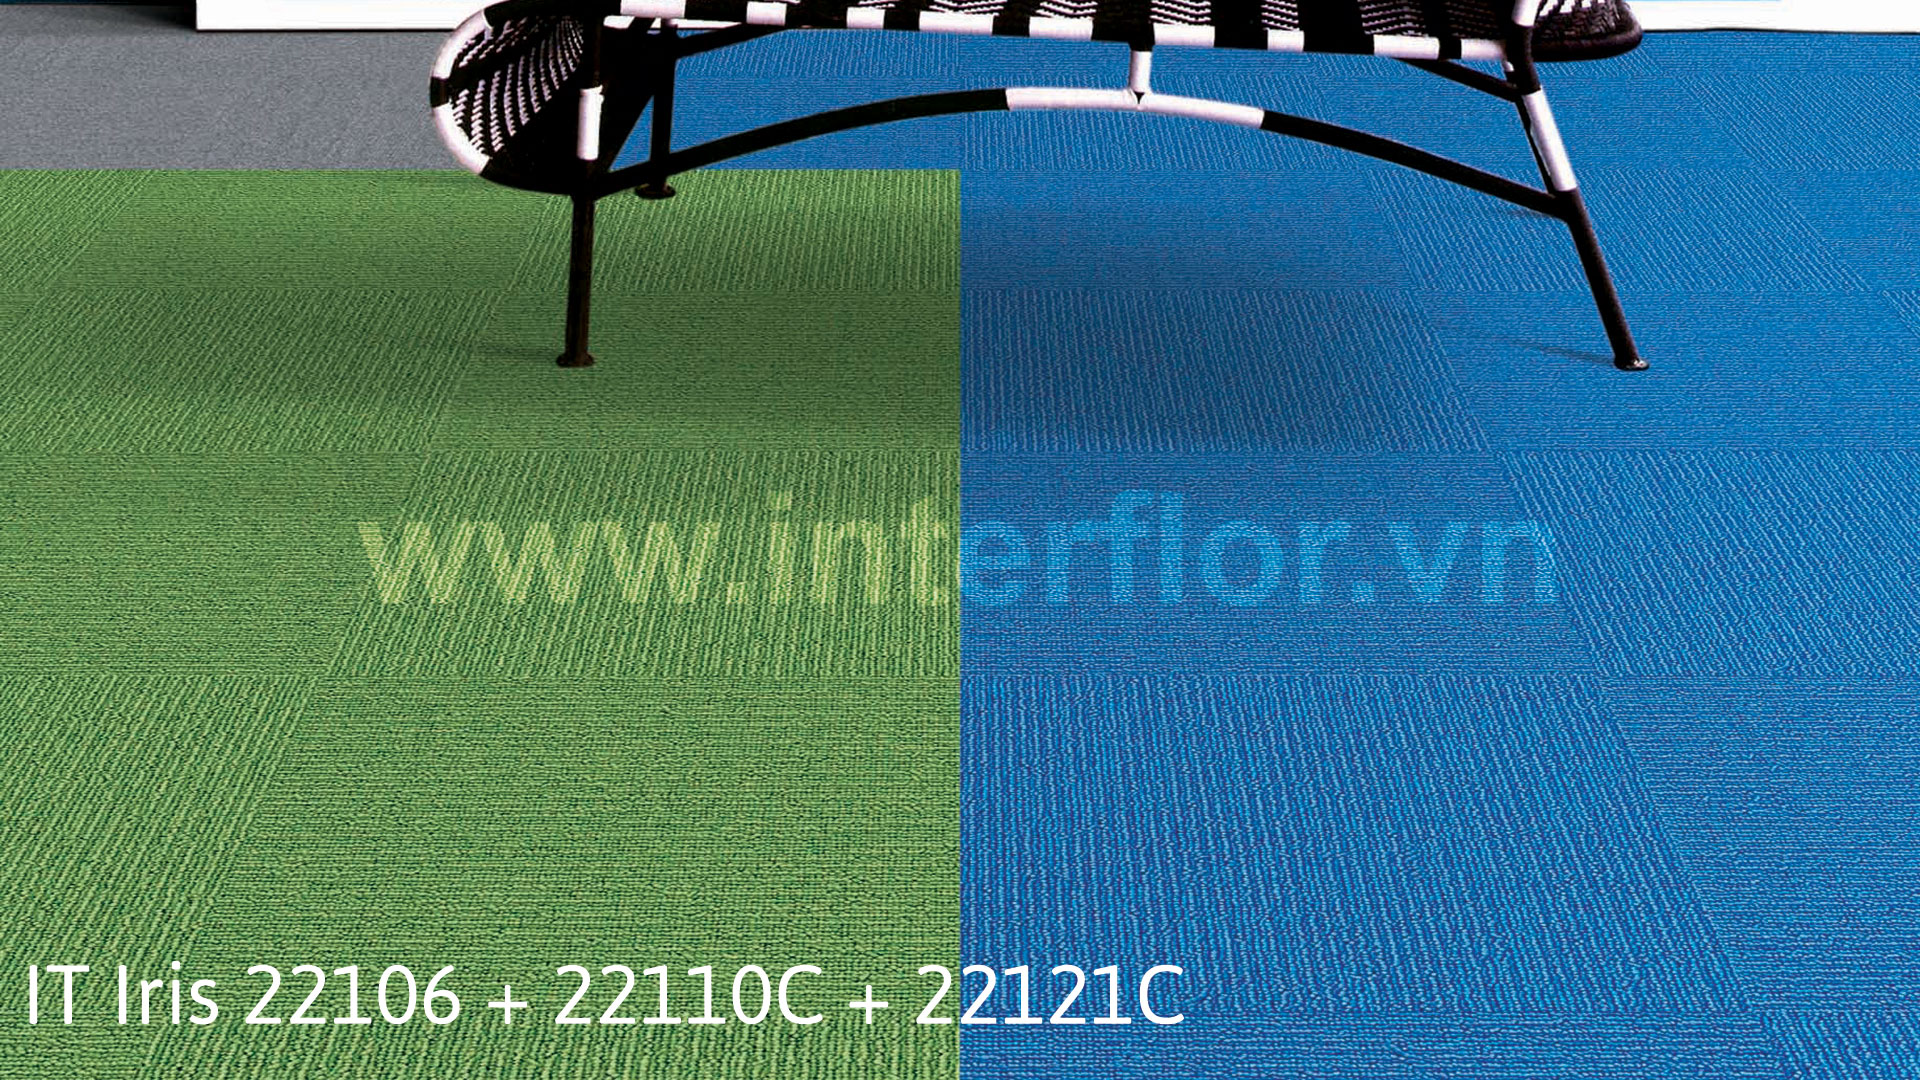 Thảm Interflor ITIris 22106+22110C+22121C